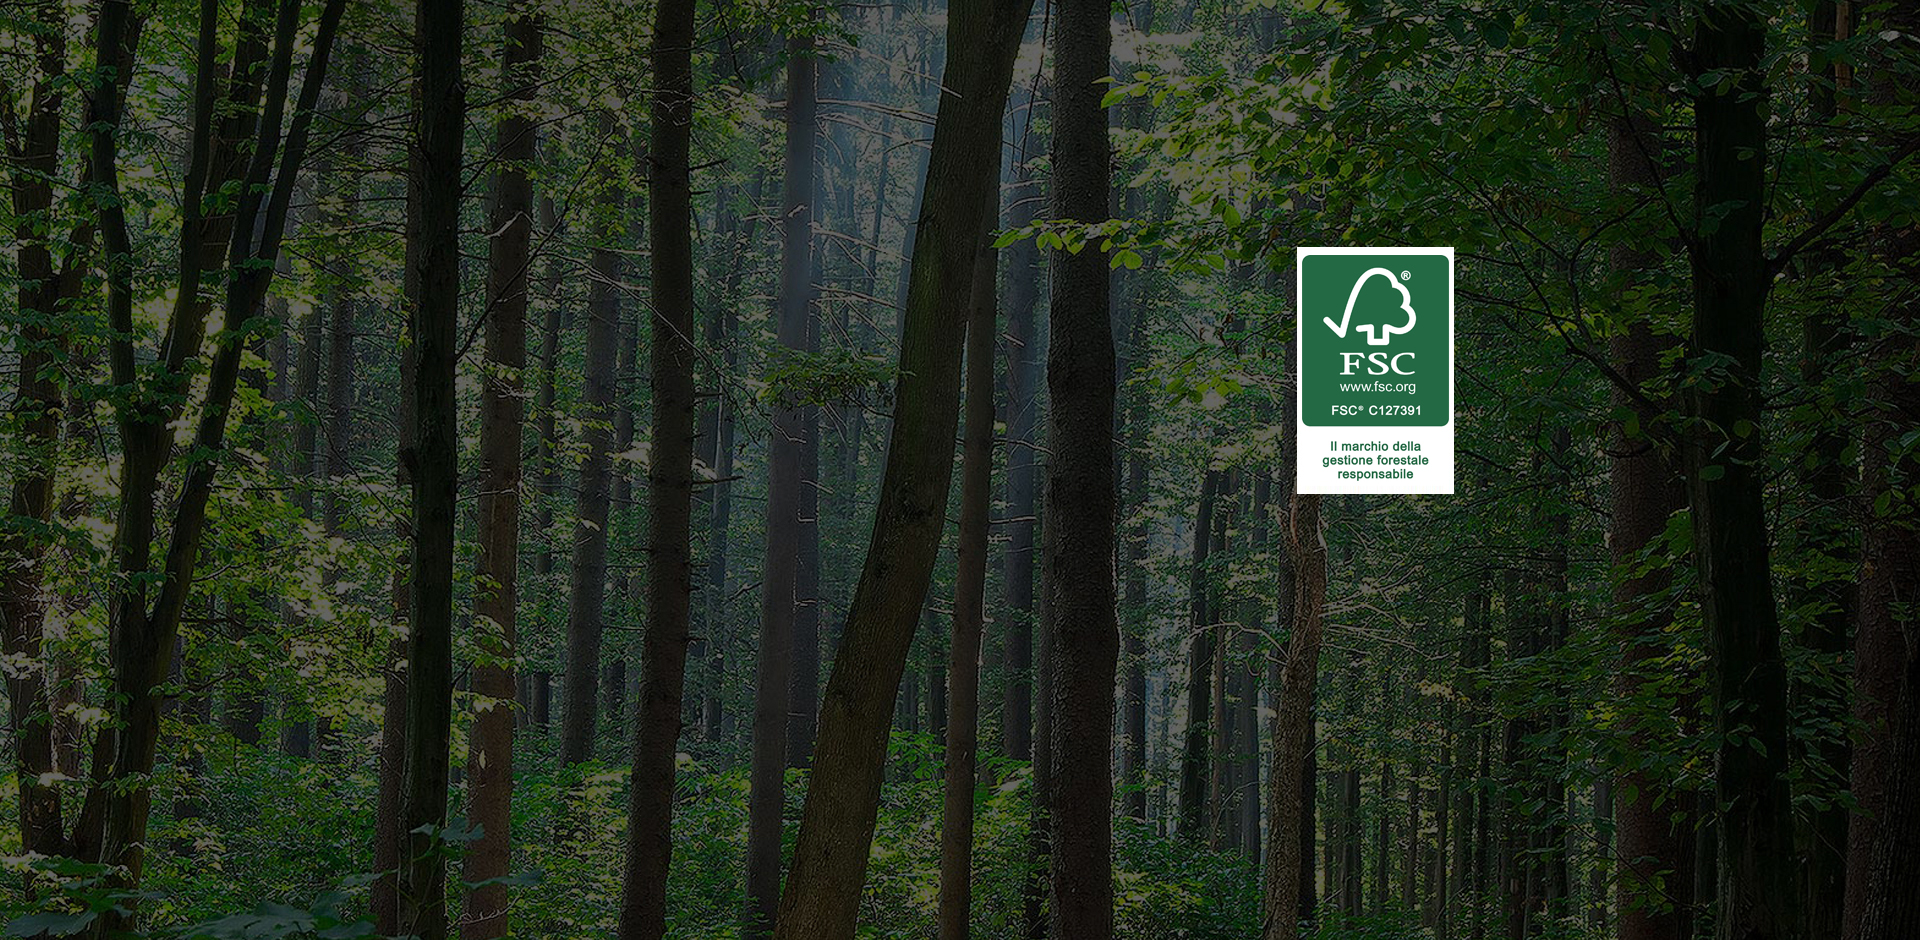 Da Fsc Italia 5 idee per un Green Deal italiano che riparta dalle foreste